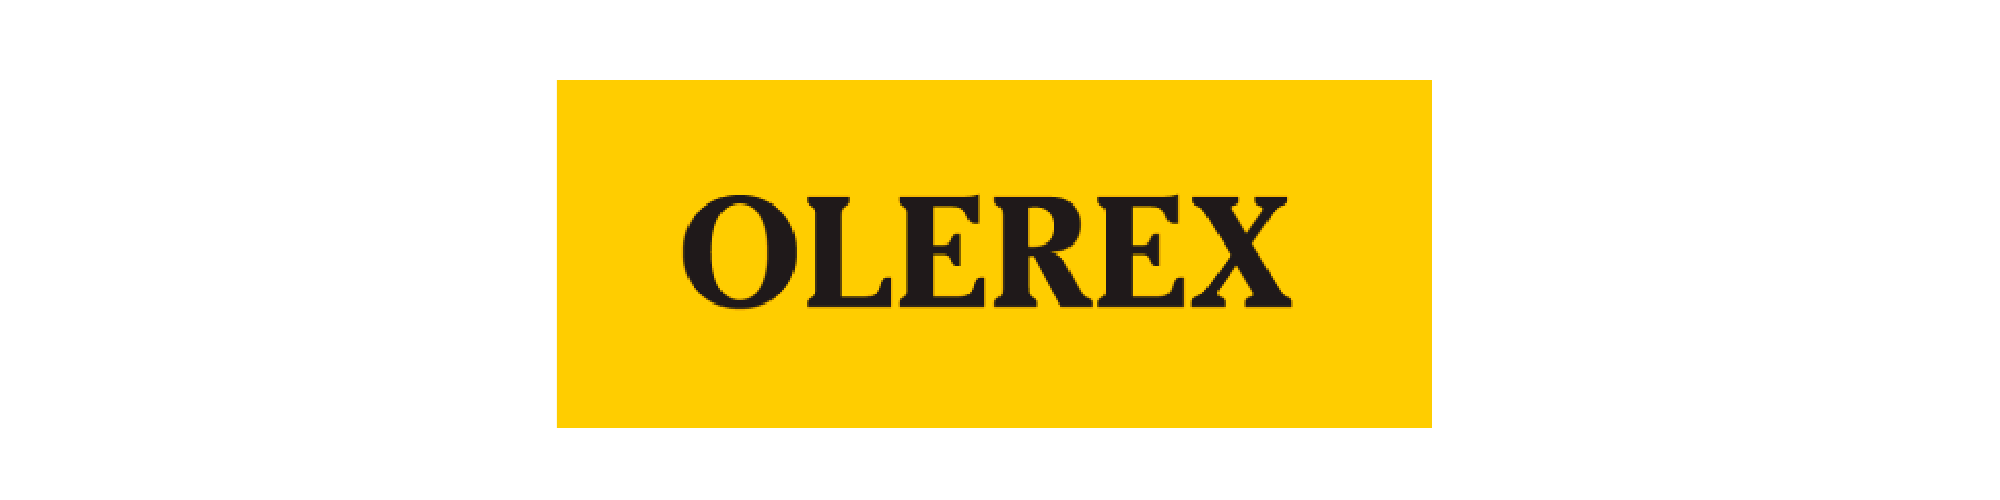 logo_olerex